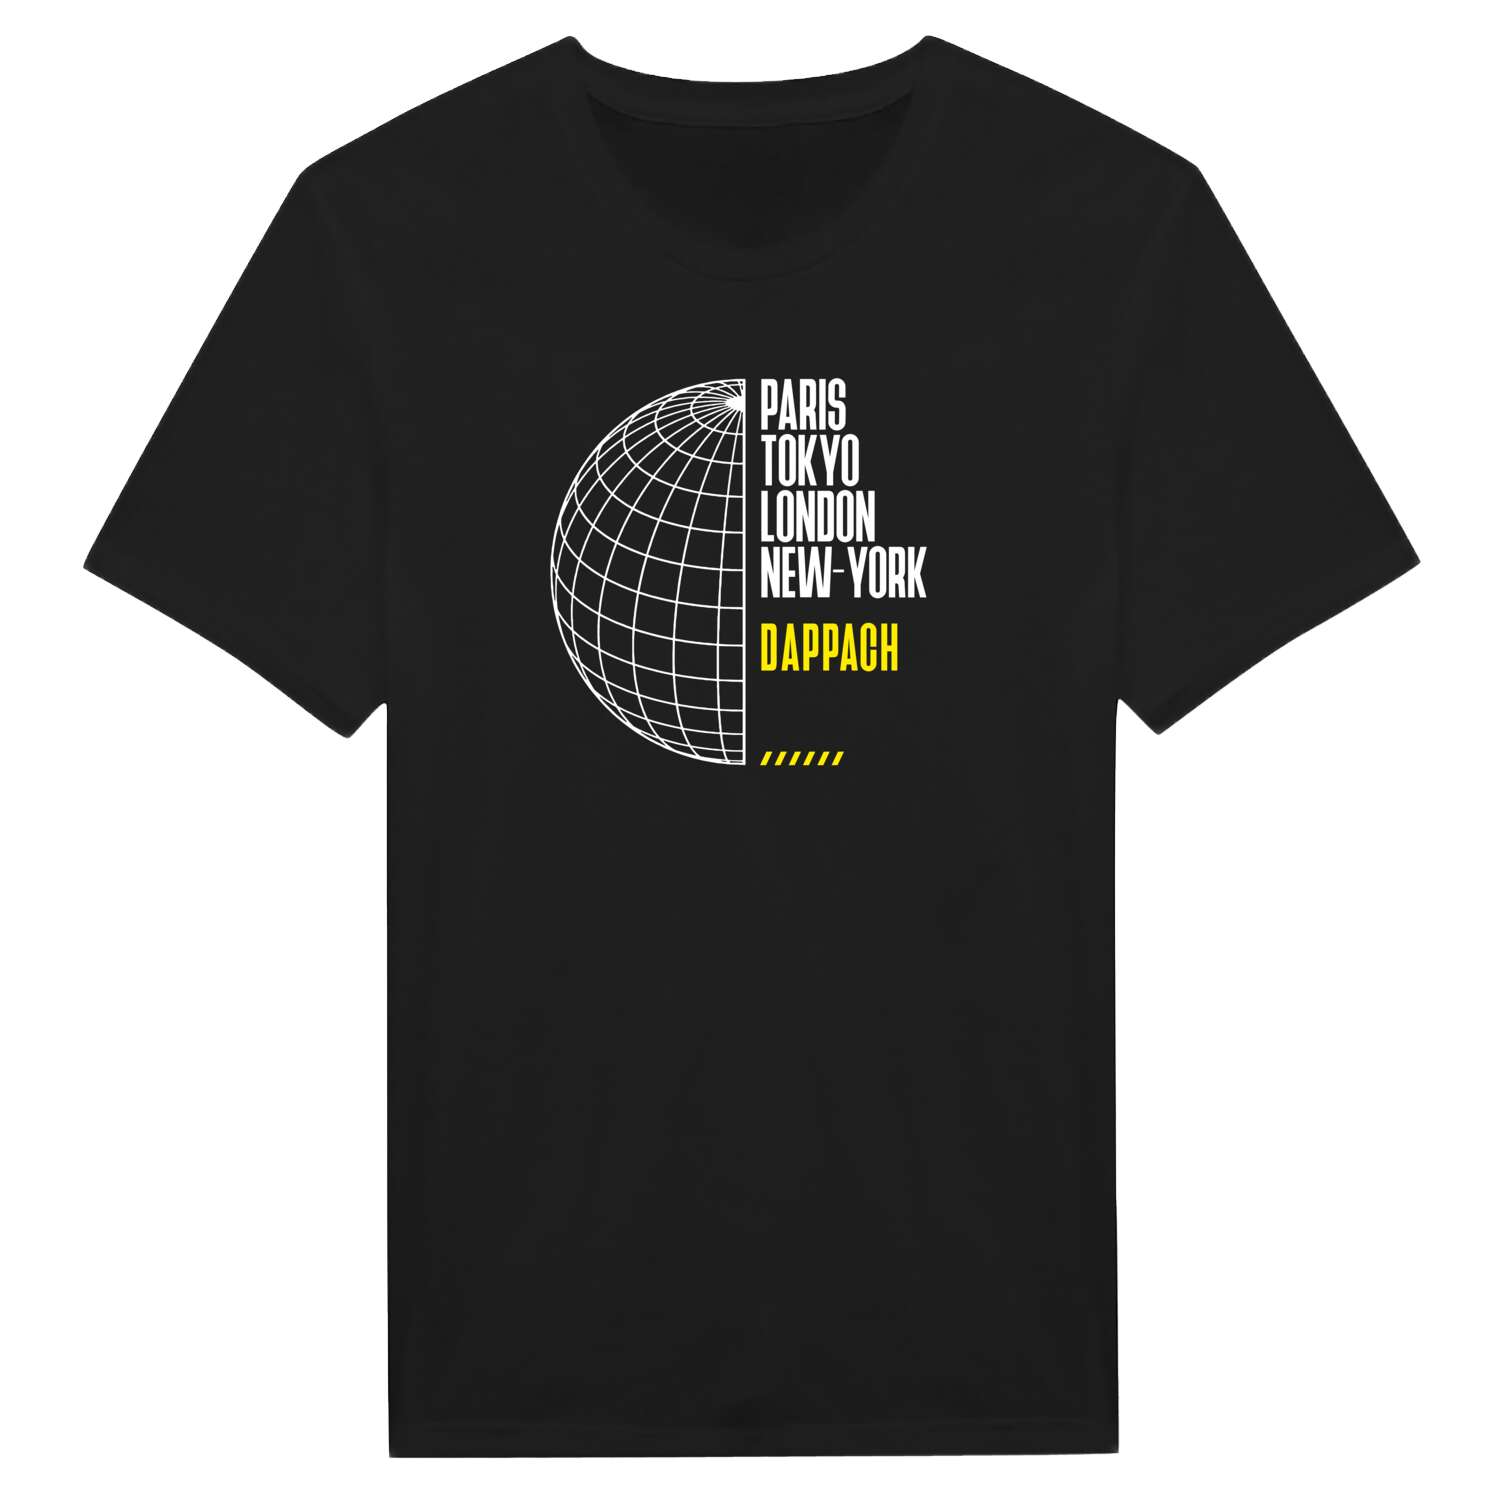 Dappach T-Shirt »Paris Tokyo London«